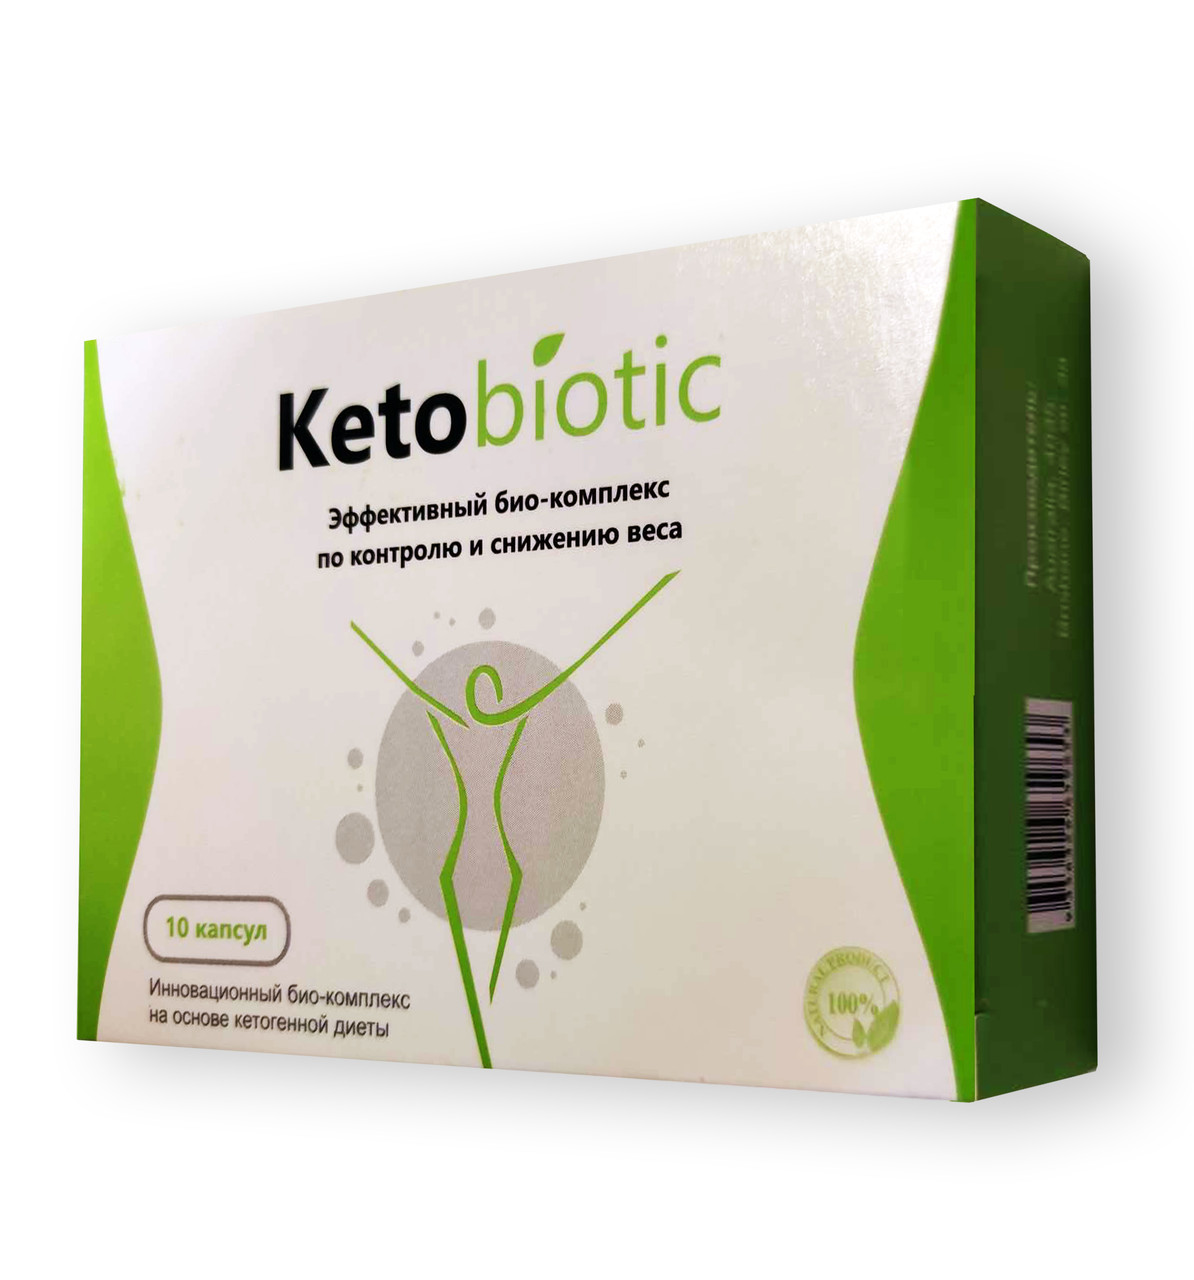 KetoBiotic — Капсули для схуднення (Кето Біотик)